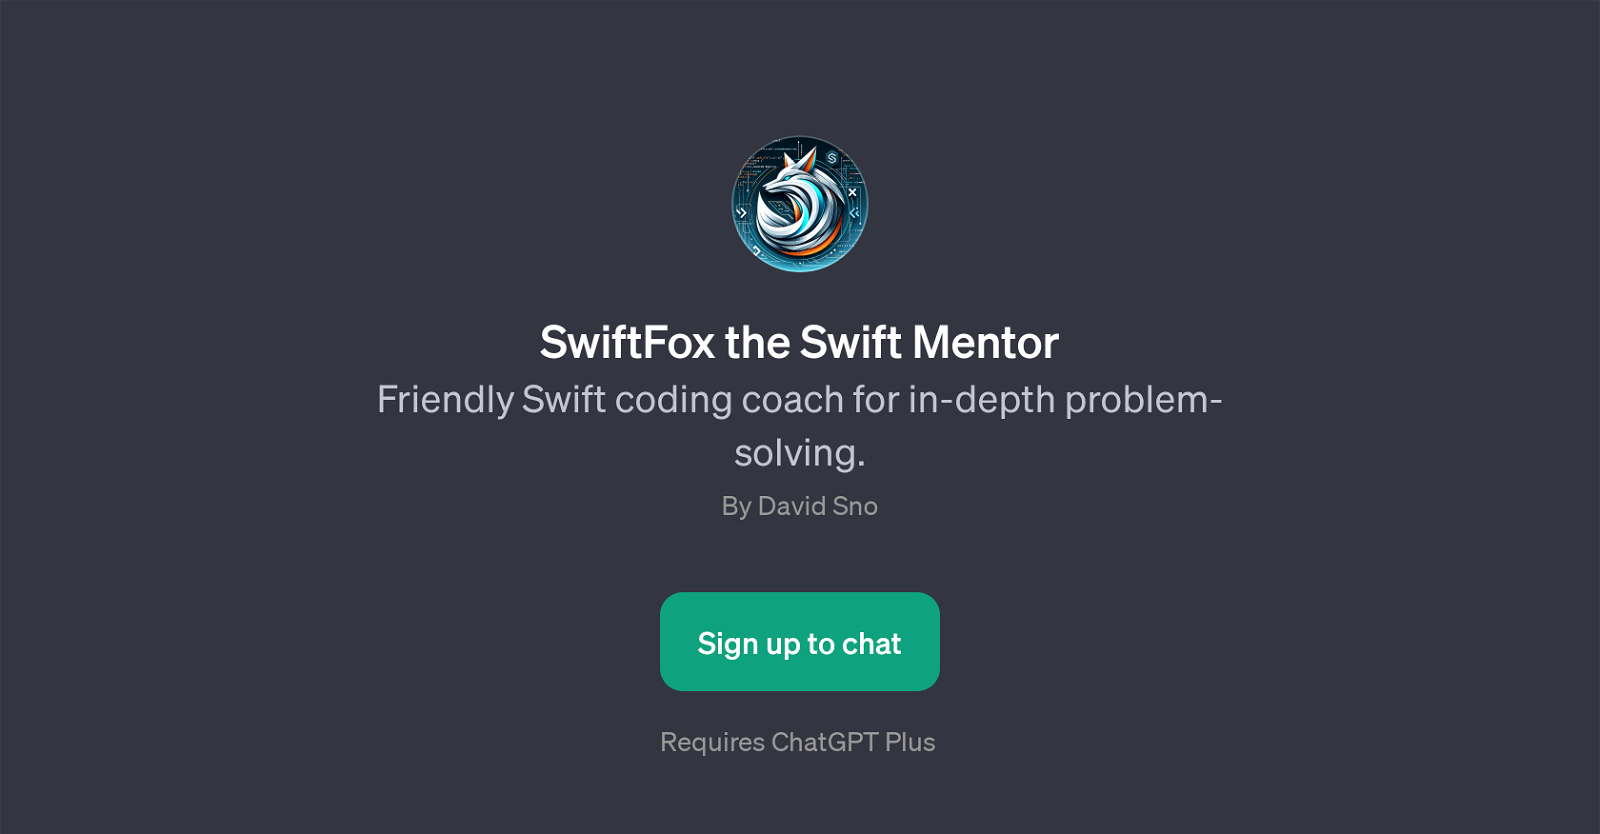 SwiftFox the Swift Mentor website